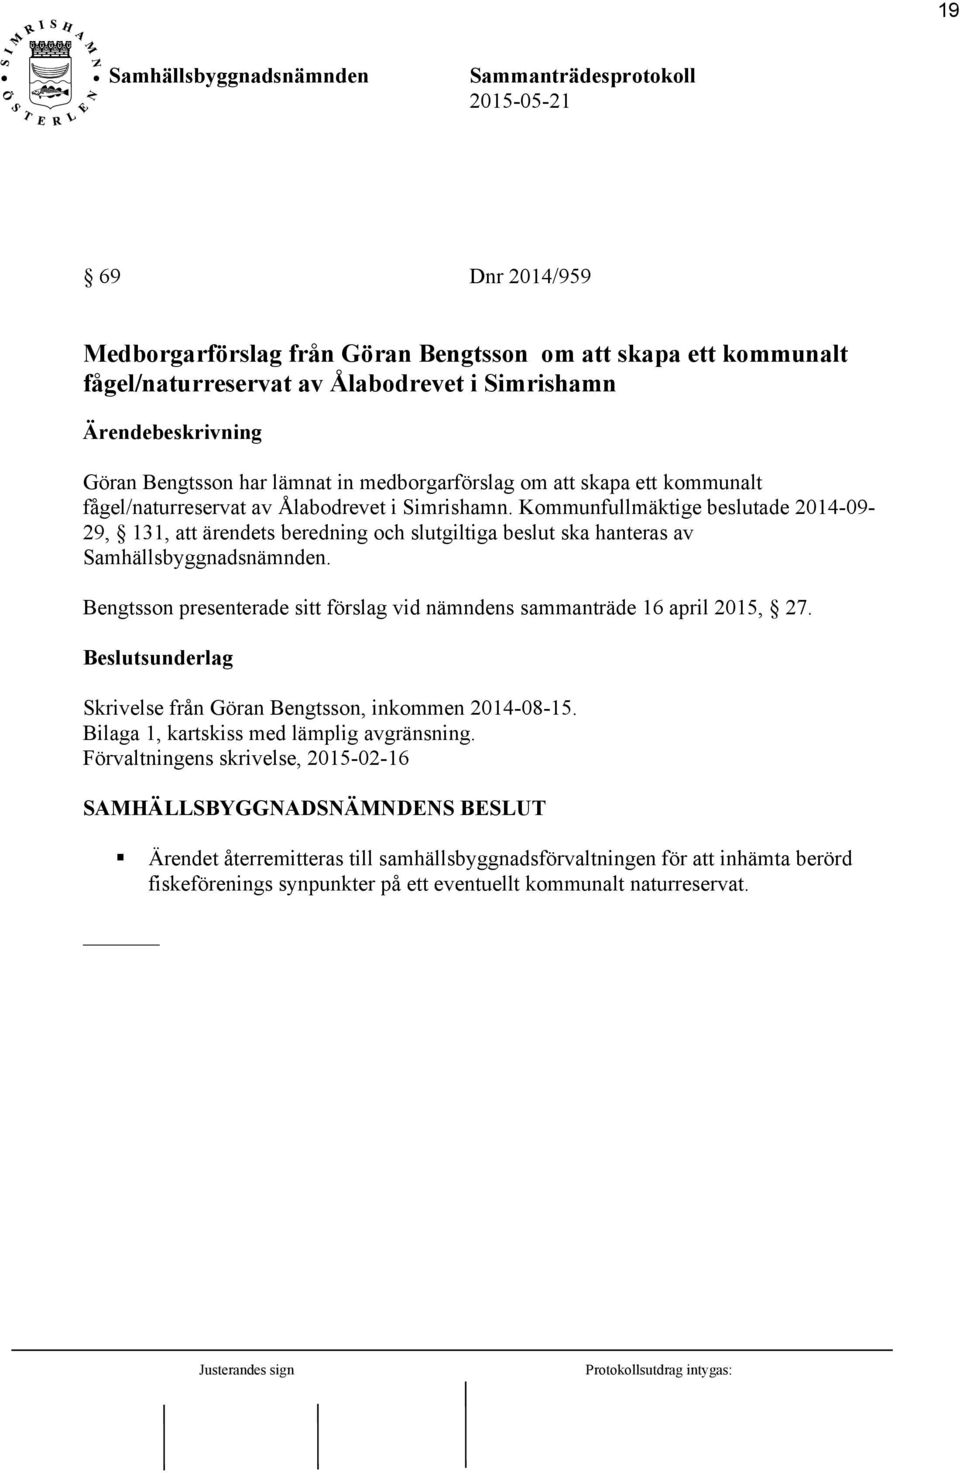 Bengtsson presenterade sitt förslag vid nämndens sammanträde 16 april 2015, 27. Skrivelse från Göran Bengtsson, inkommen 2014-08-15. Bilaga 1, kartskiss med lämplig avgränsning.